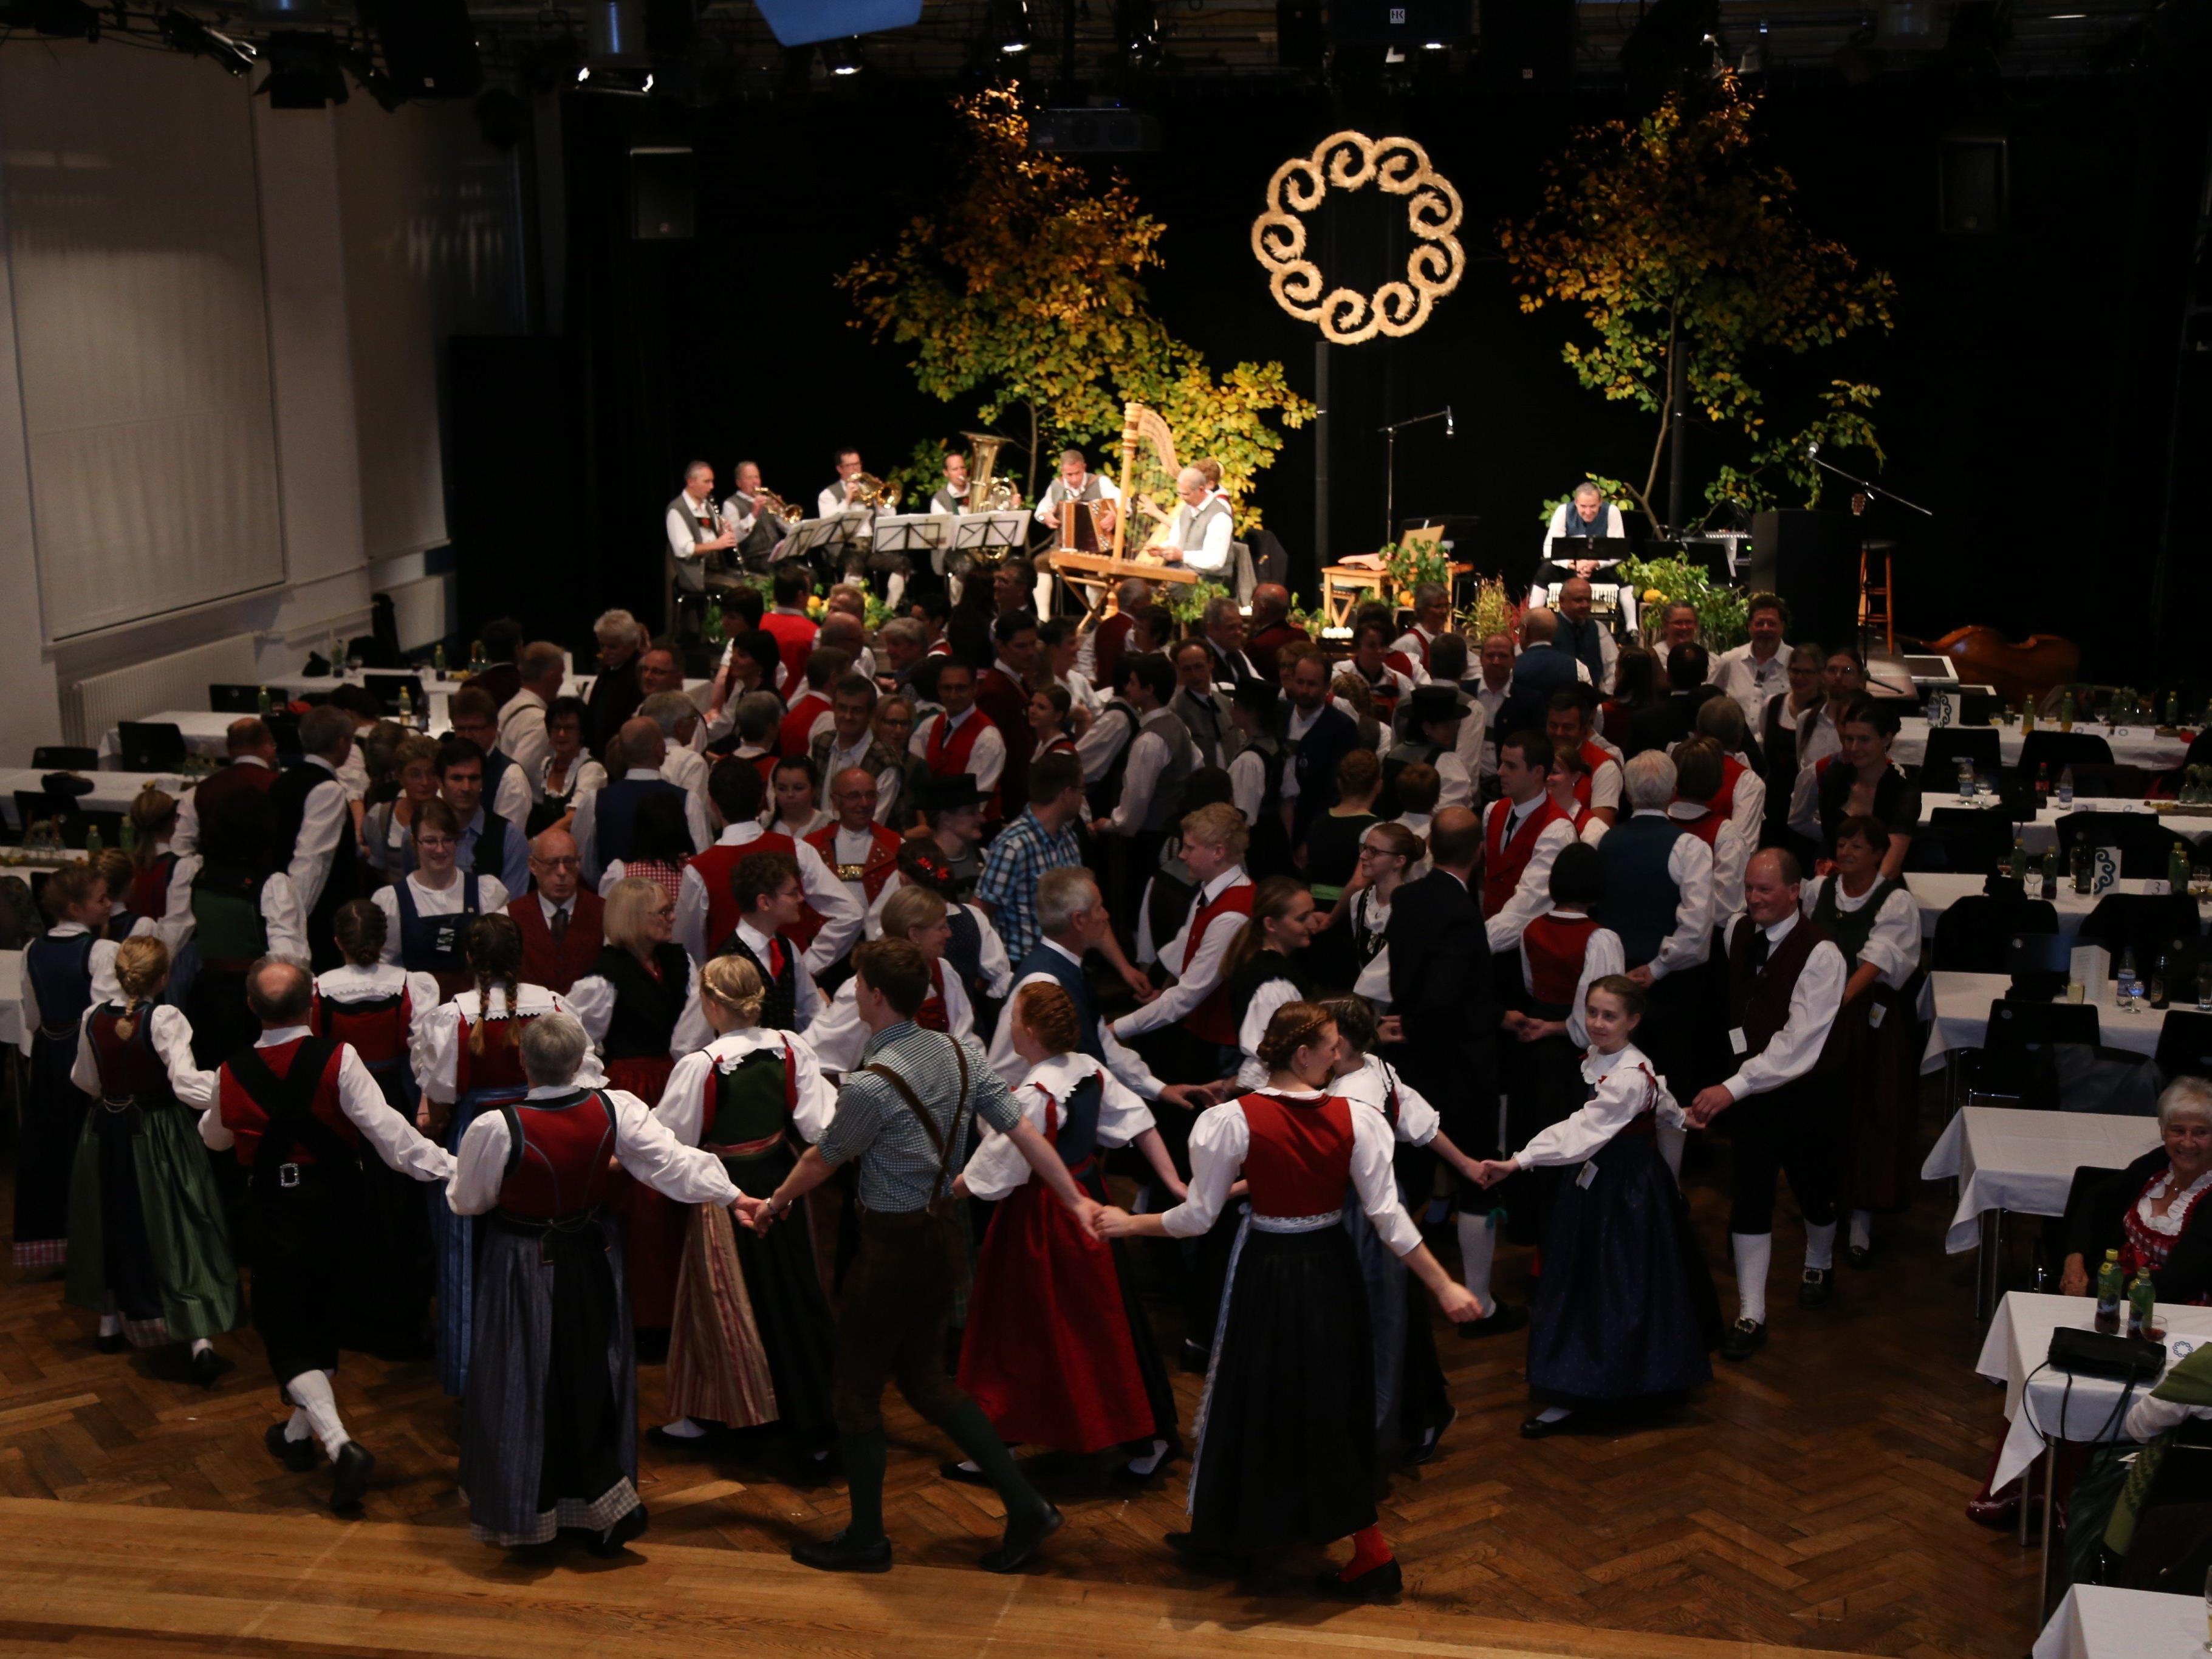 Über 100 Tänzer waren gekommen, um beim traditionellen Kathreintanz der TG im Pförtnerhaus teilzunehmen.